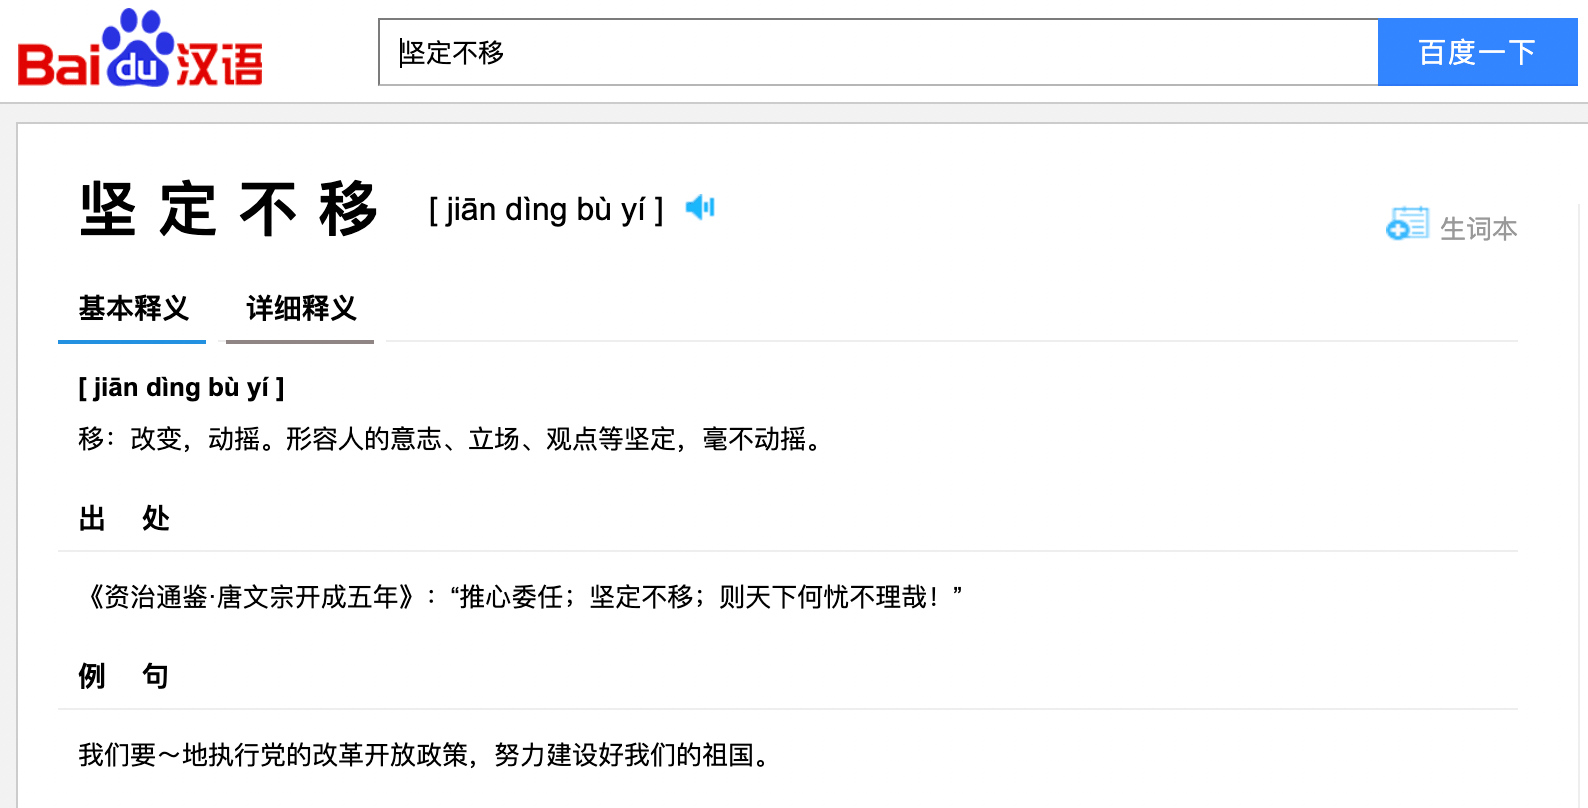 Idiom definition on Baidu Hanyu